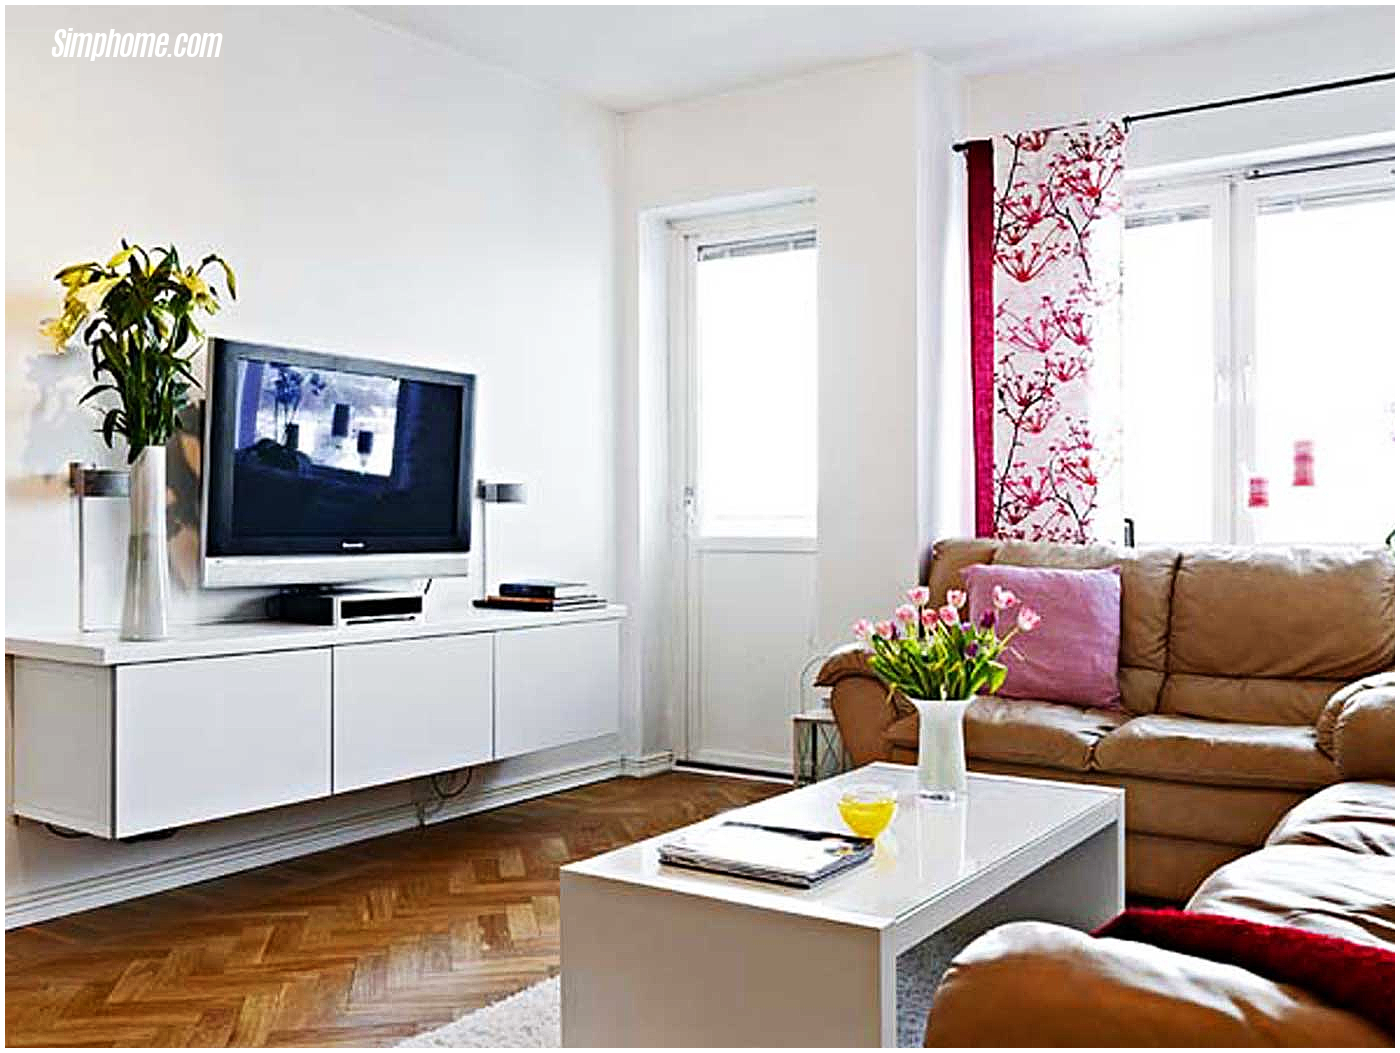 small room design living room furniture for small spaces via Simphome.com